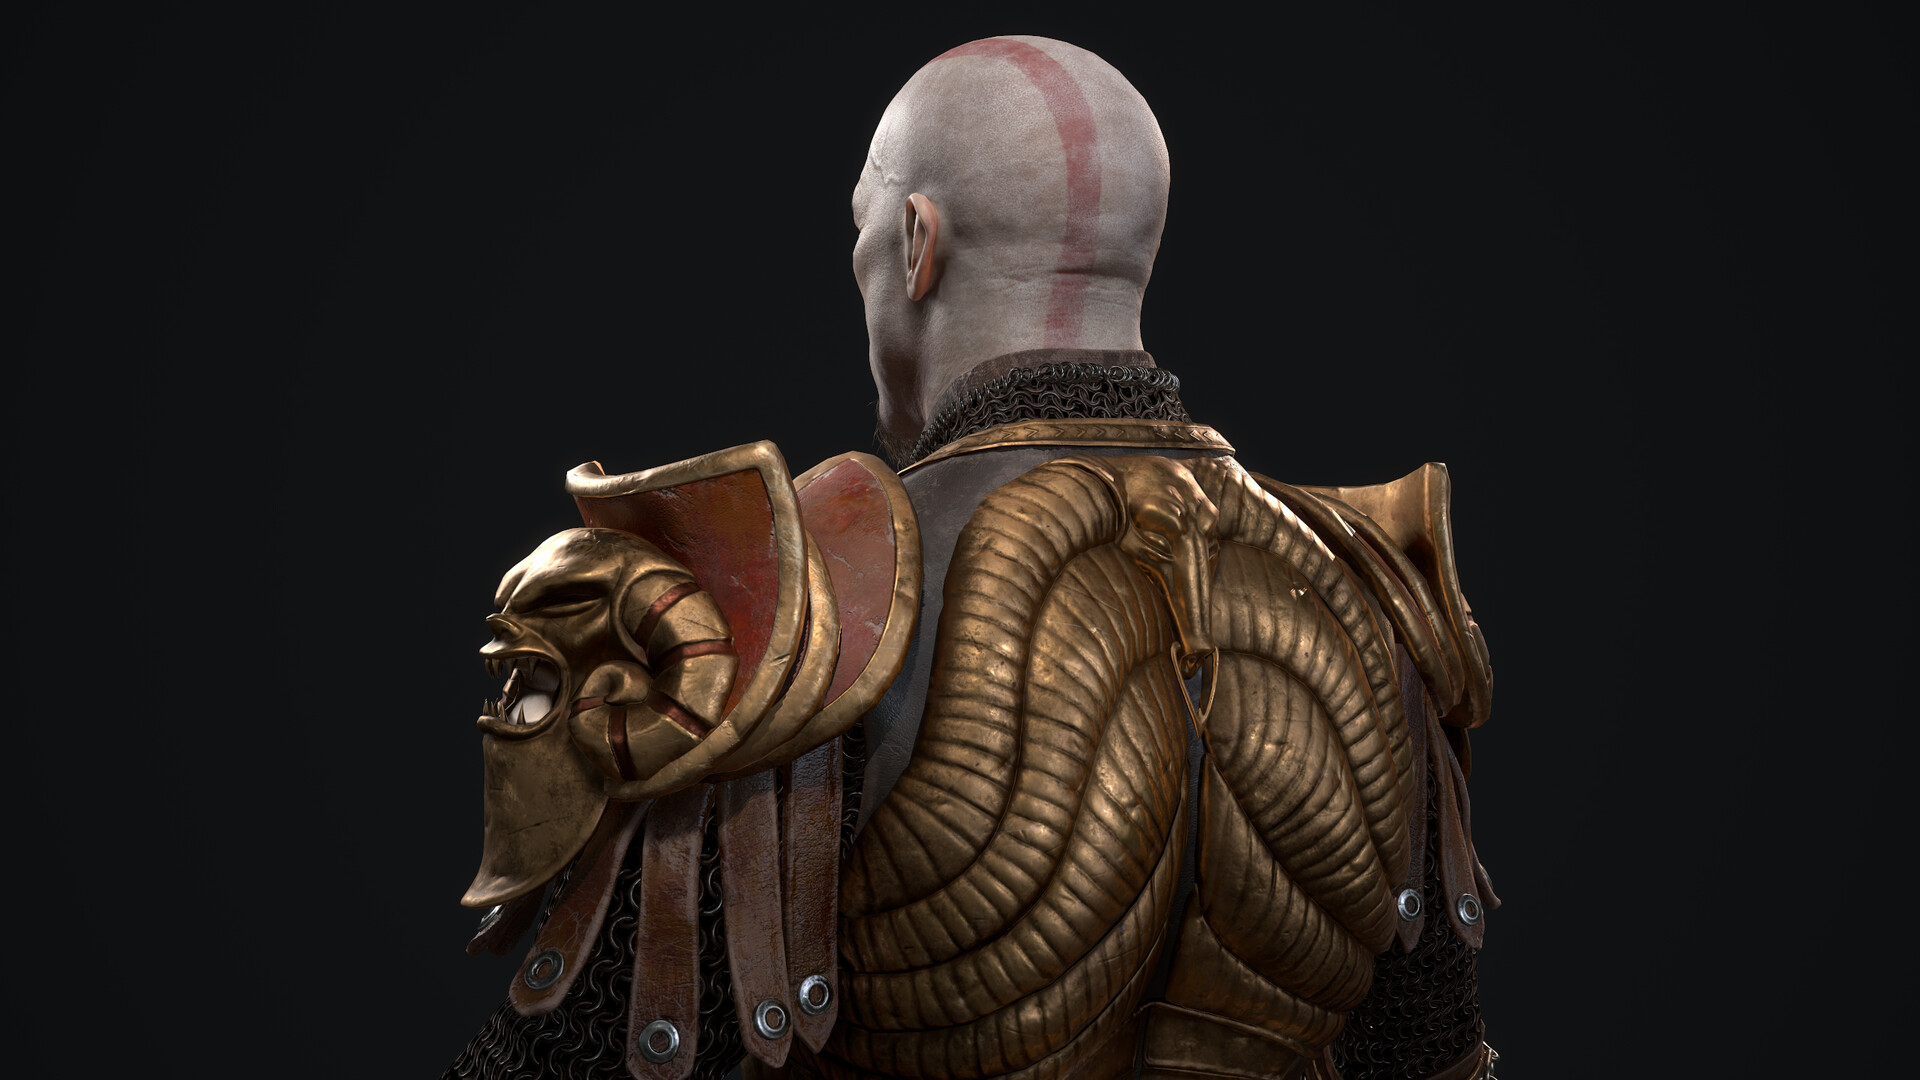 kratos god of war 2 costumes